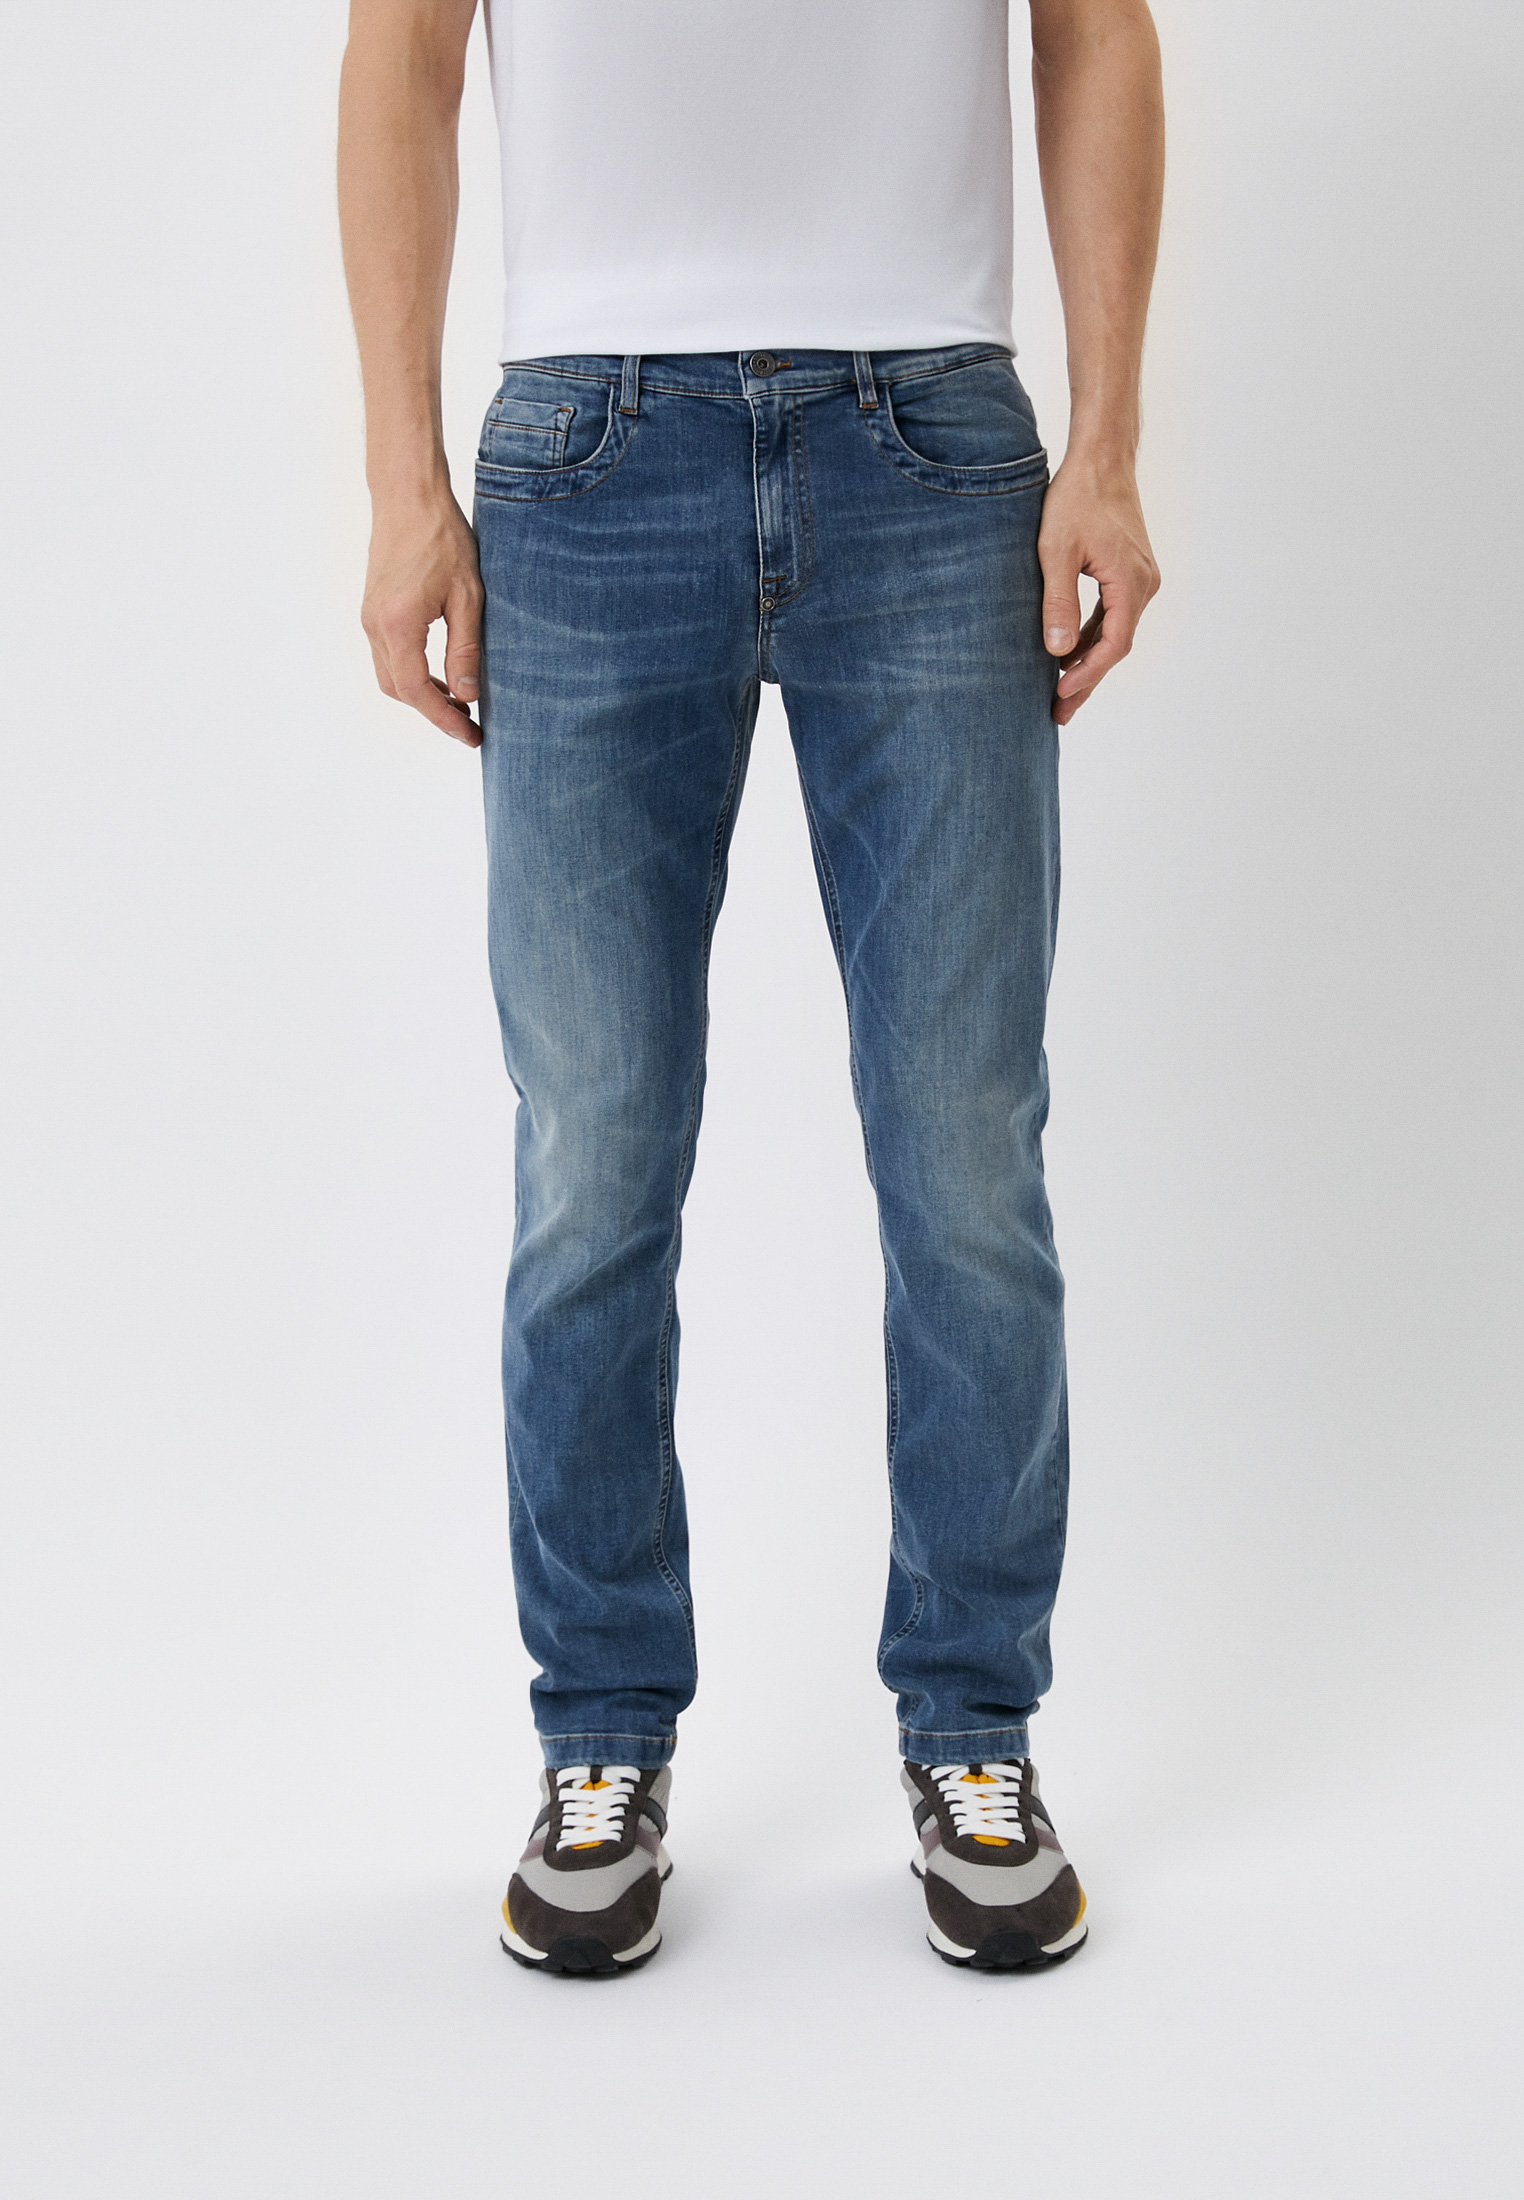 Мужские зауженные джинсы Bikkembergs (Биккембергс) C Q 101 1C S 3511: изображение 1